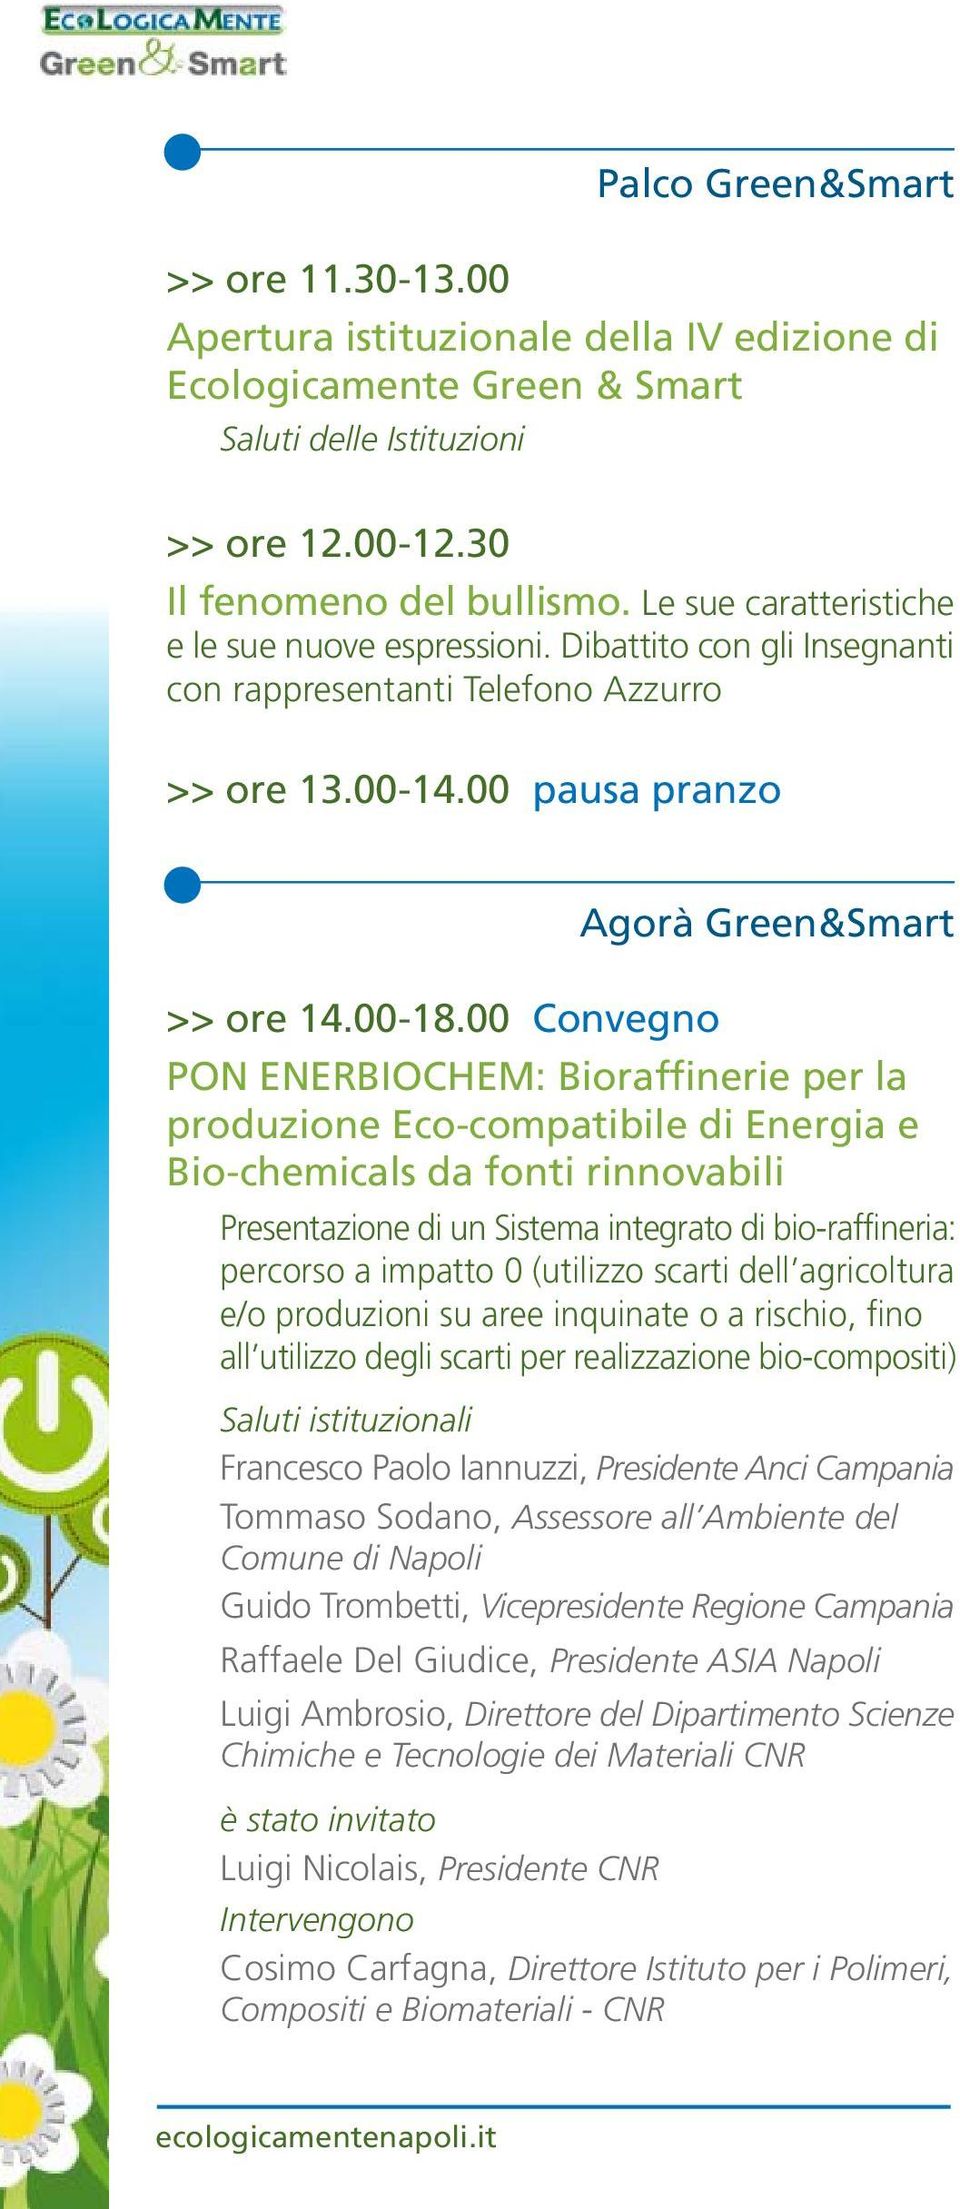 00 Convegno Agorà Green&Smart PON ENERBIOCHEM: Bioraffinerie per la produzione Eco-compatibile di Energia e Bio-chemicals da fonti rinnovabili Presentazione di un Sistema integrato di bio-raffineria: